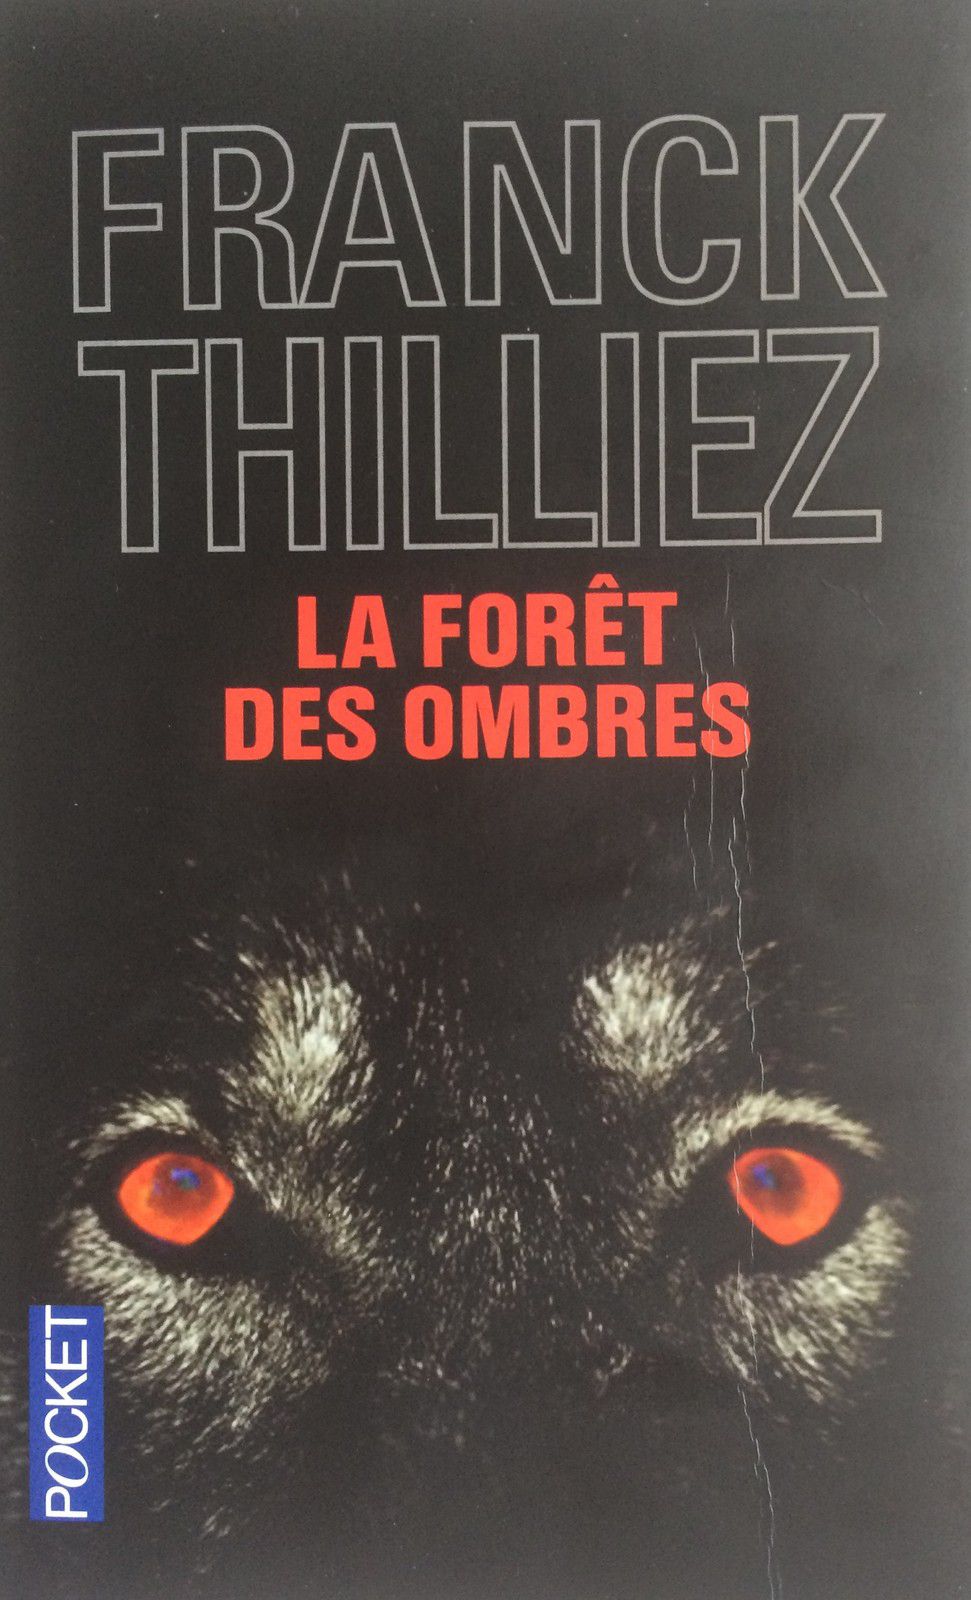 "La forêt des ombres" de Franck Thilliez publié en 2006 : un thriller machiavélique.